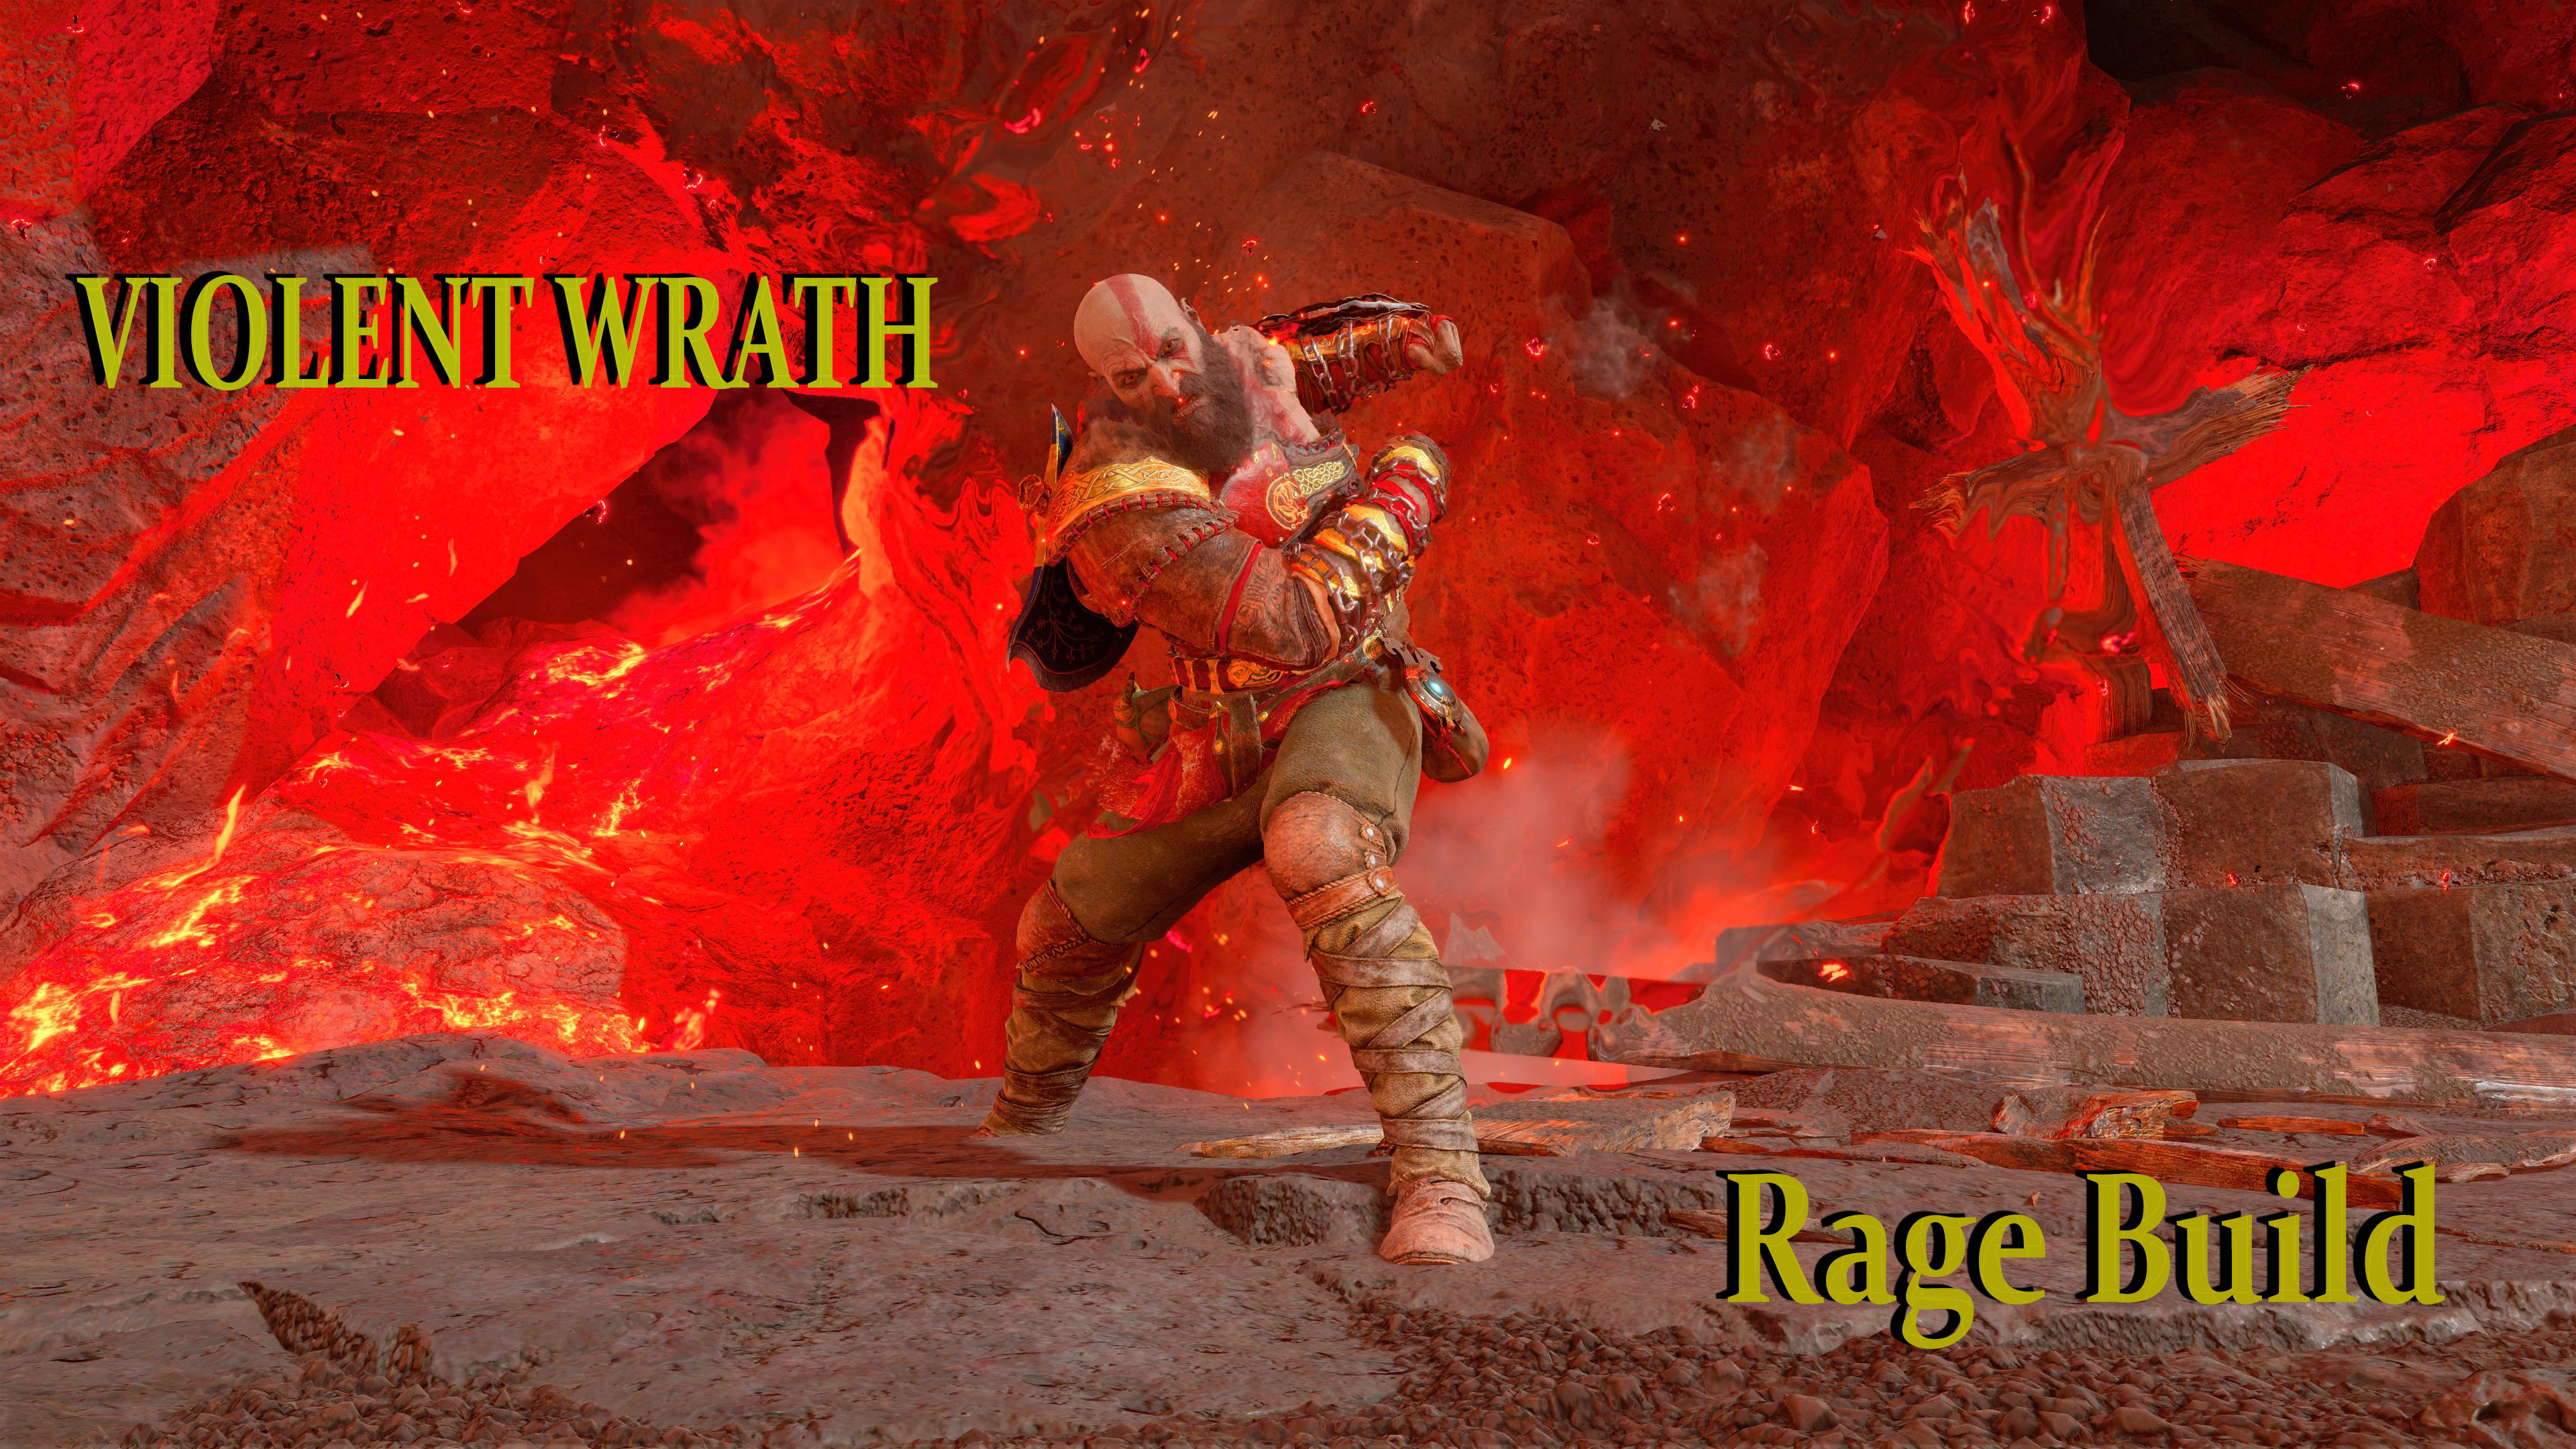 God of War Ragnarok - Spartan Rage 